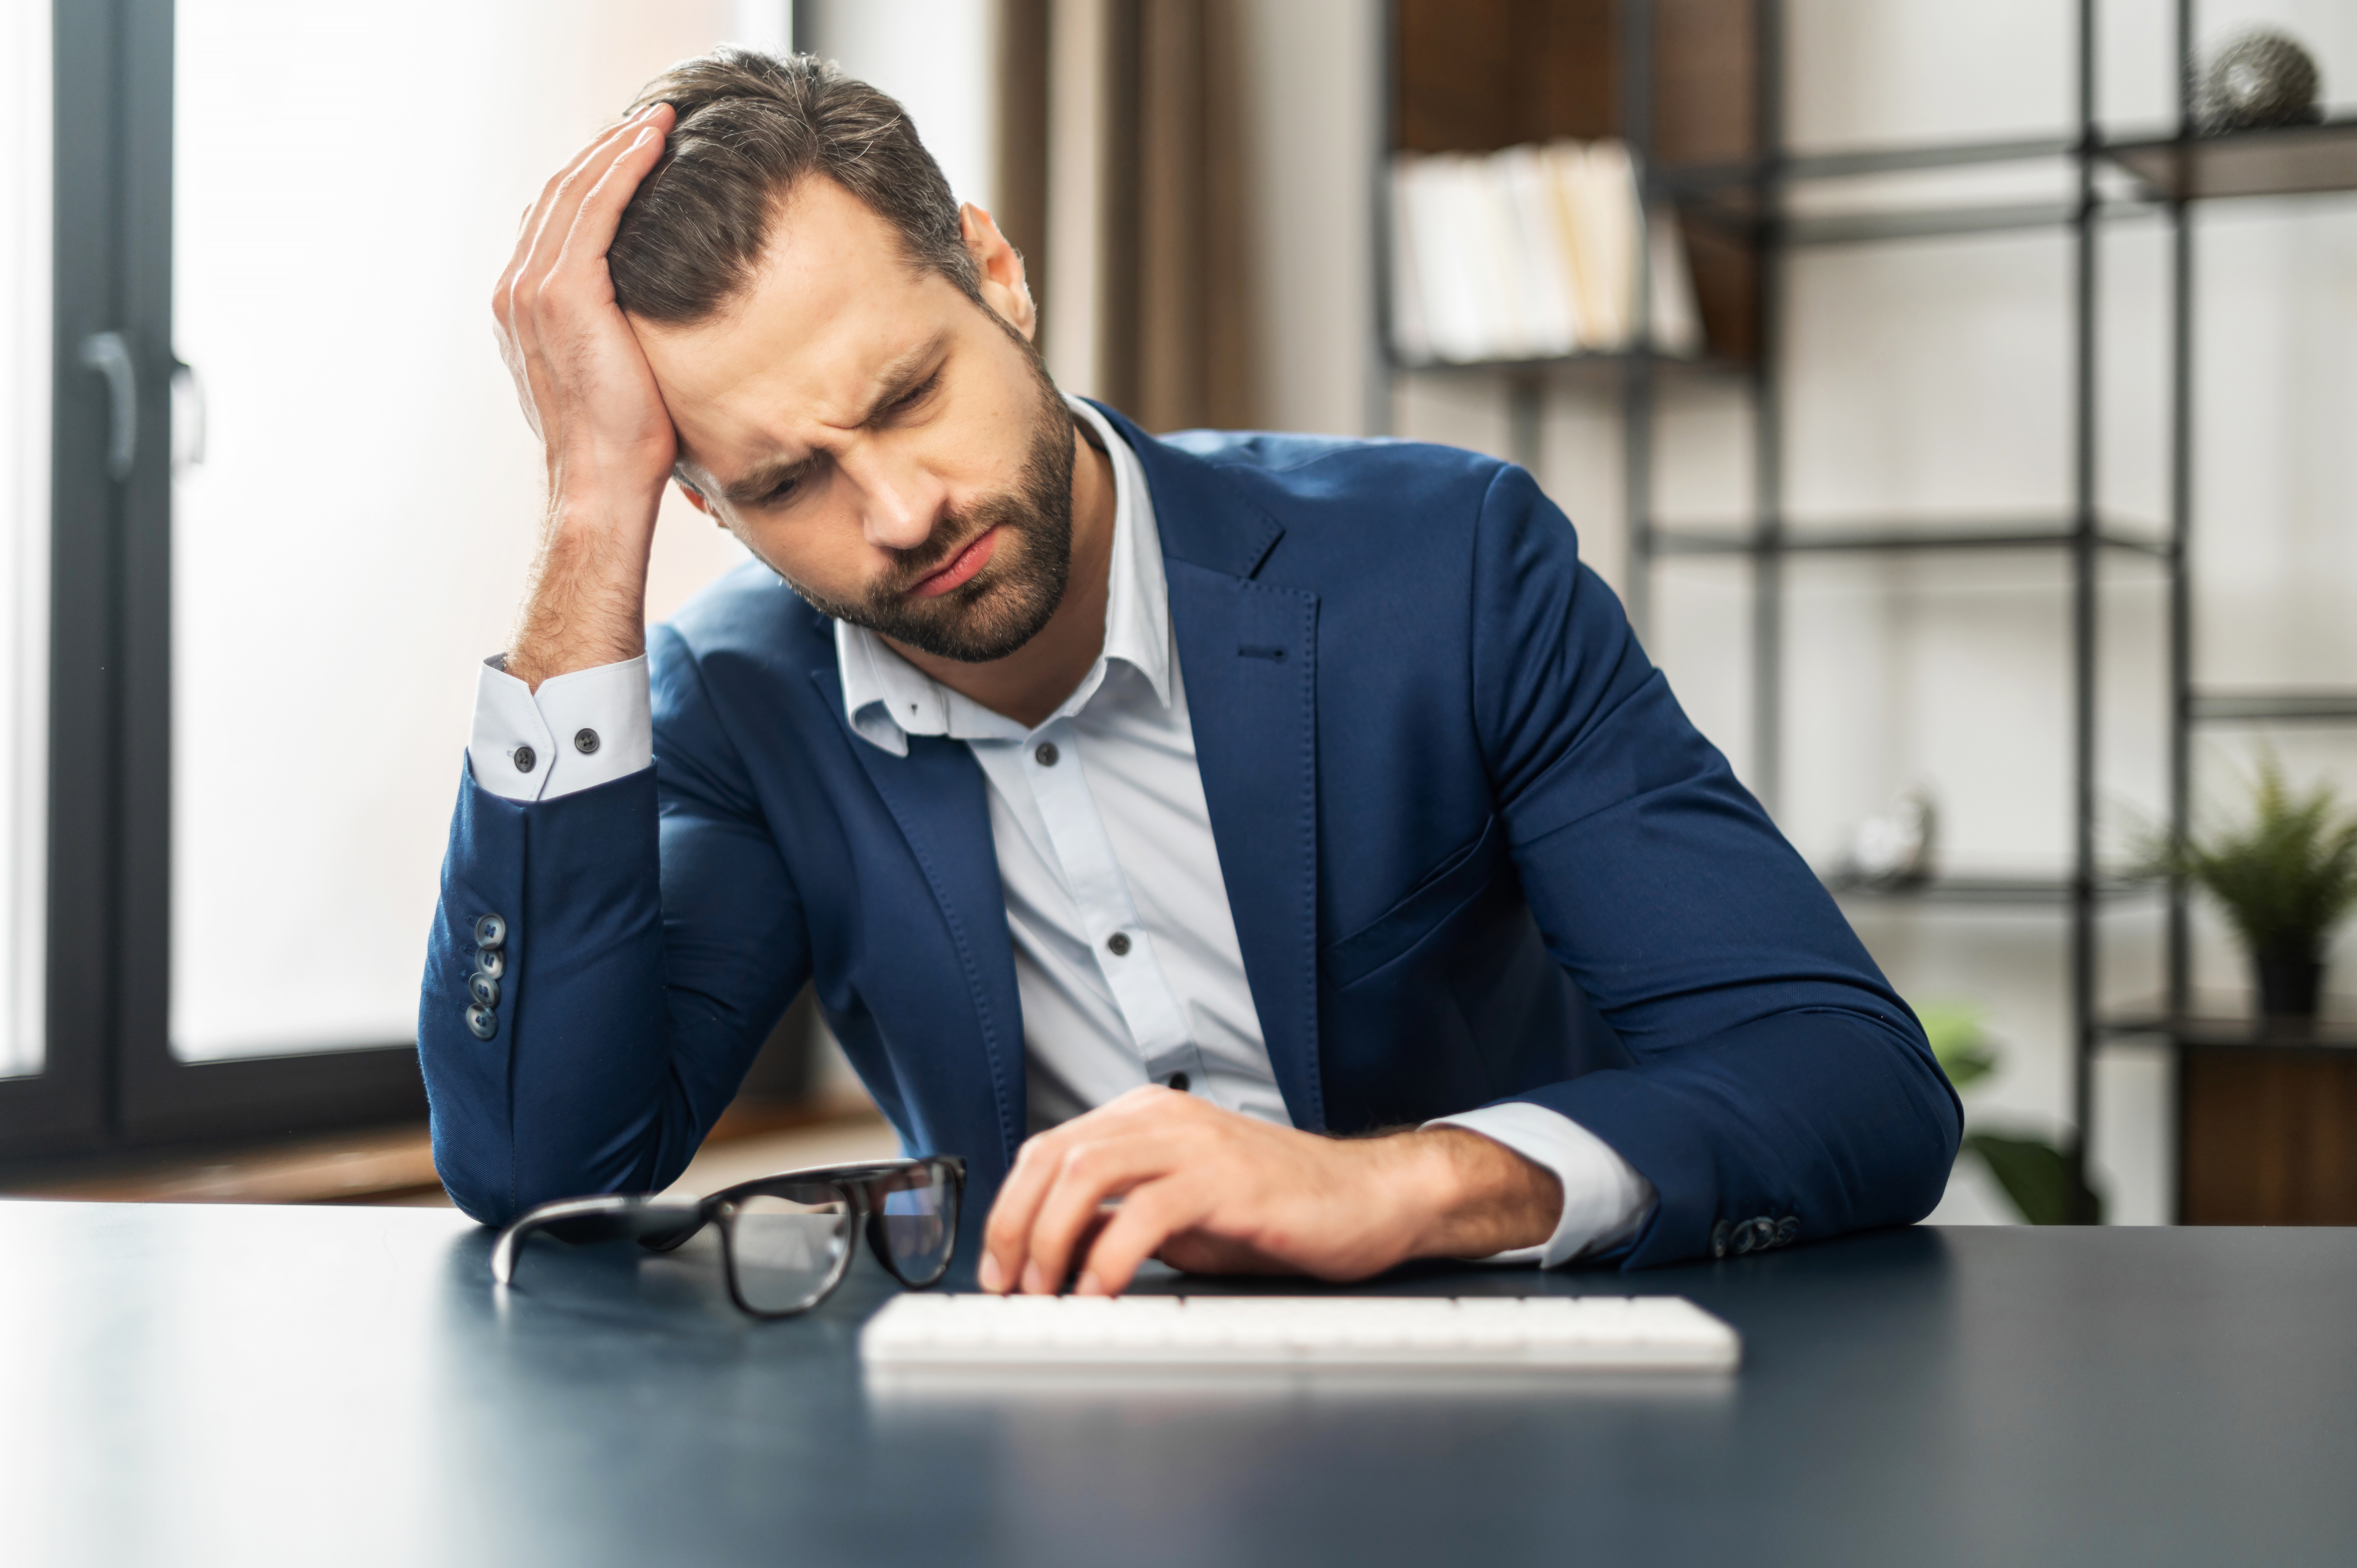 Homme stressé au travail | Source : Shutterstock